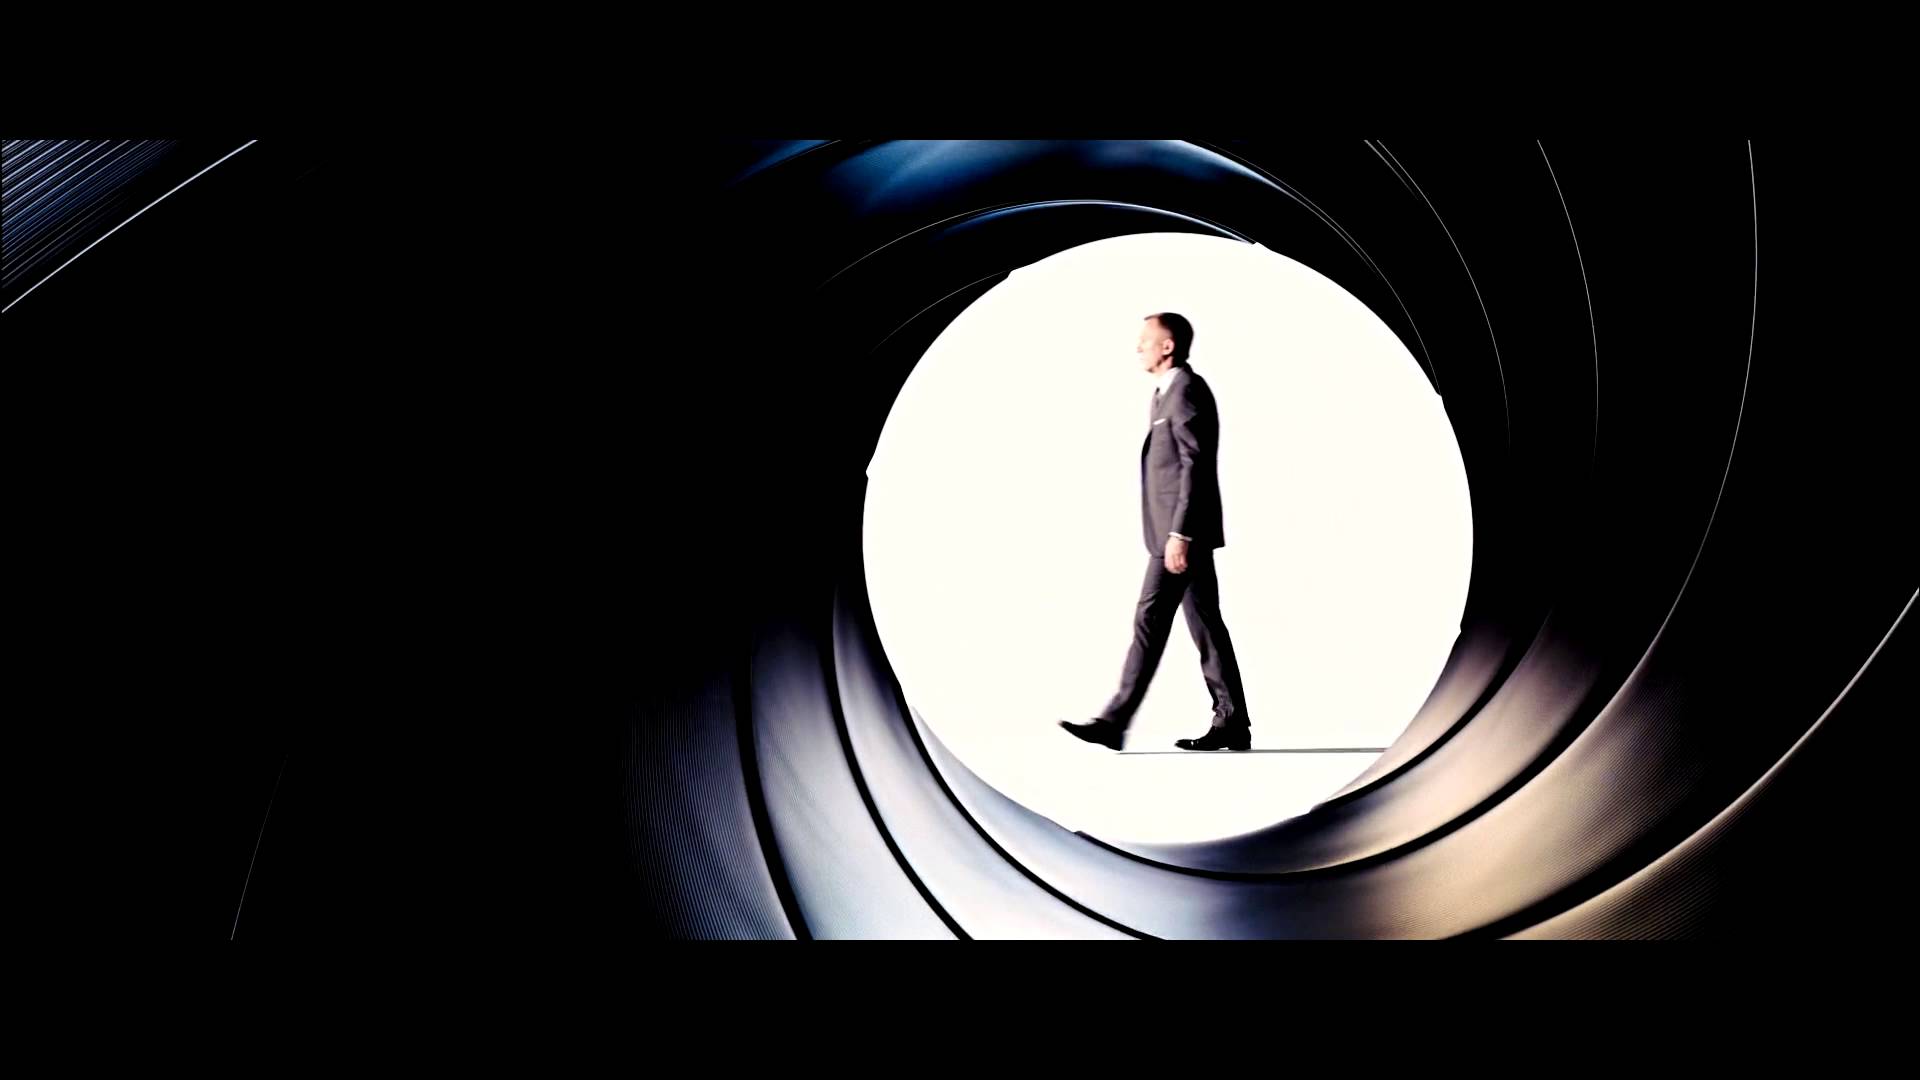 Displaying Image For James Bond Barrel Skyfall